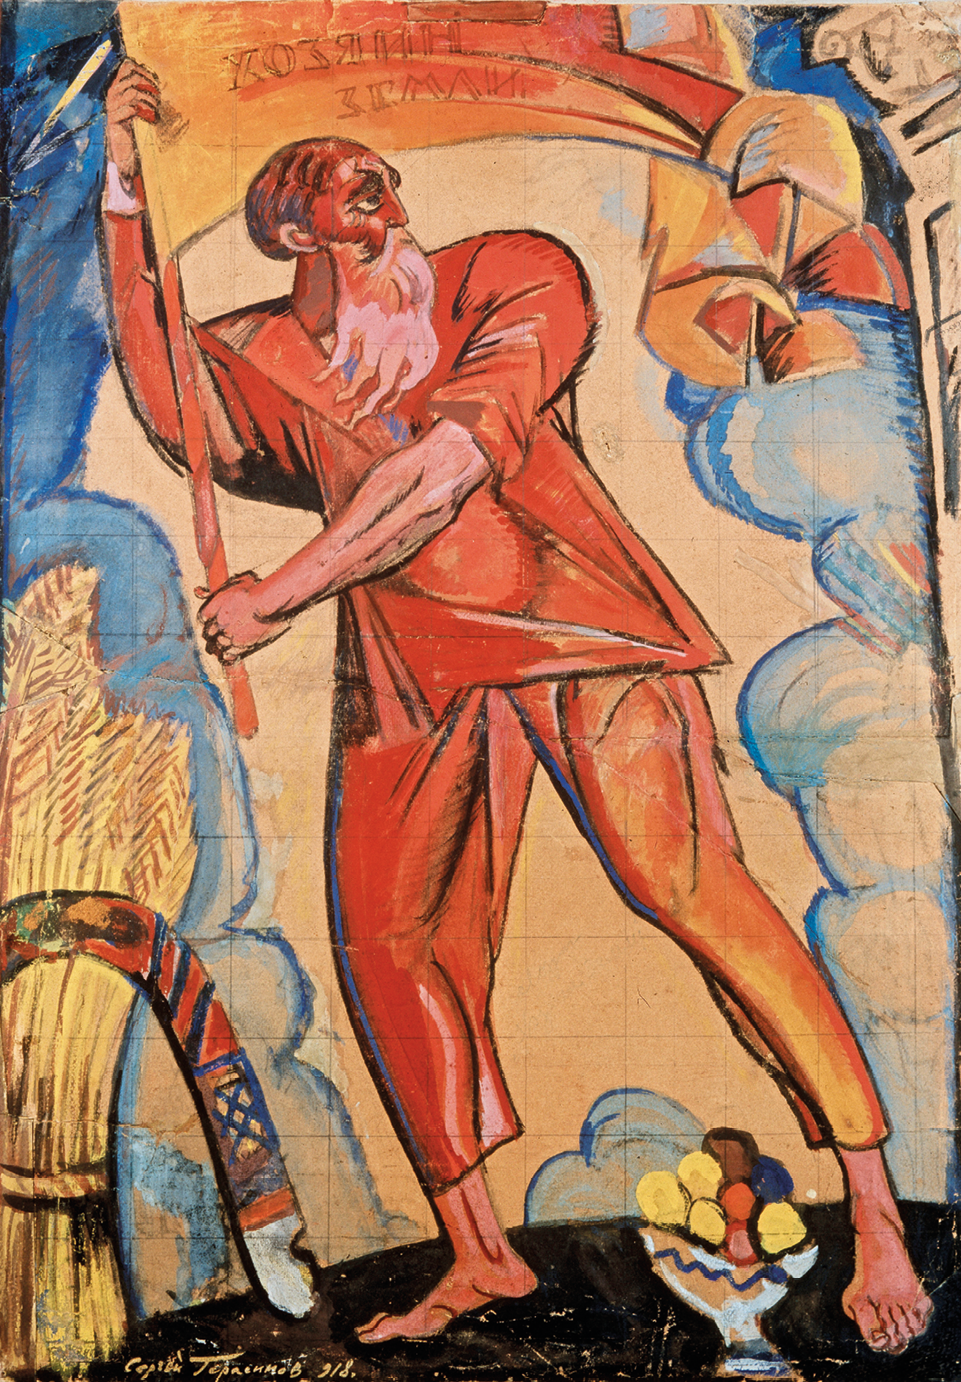 Pintura. No centro da imagem, um homem calvo, com uma densa barba grisalha e comprida, vestindo blusa e calça alaranjadas. Ele segura a haste de uma bandeira vermelha. À esquerda, um feixe de trigo, e em segundo plano, colunas de fumaça azuladas.